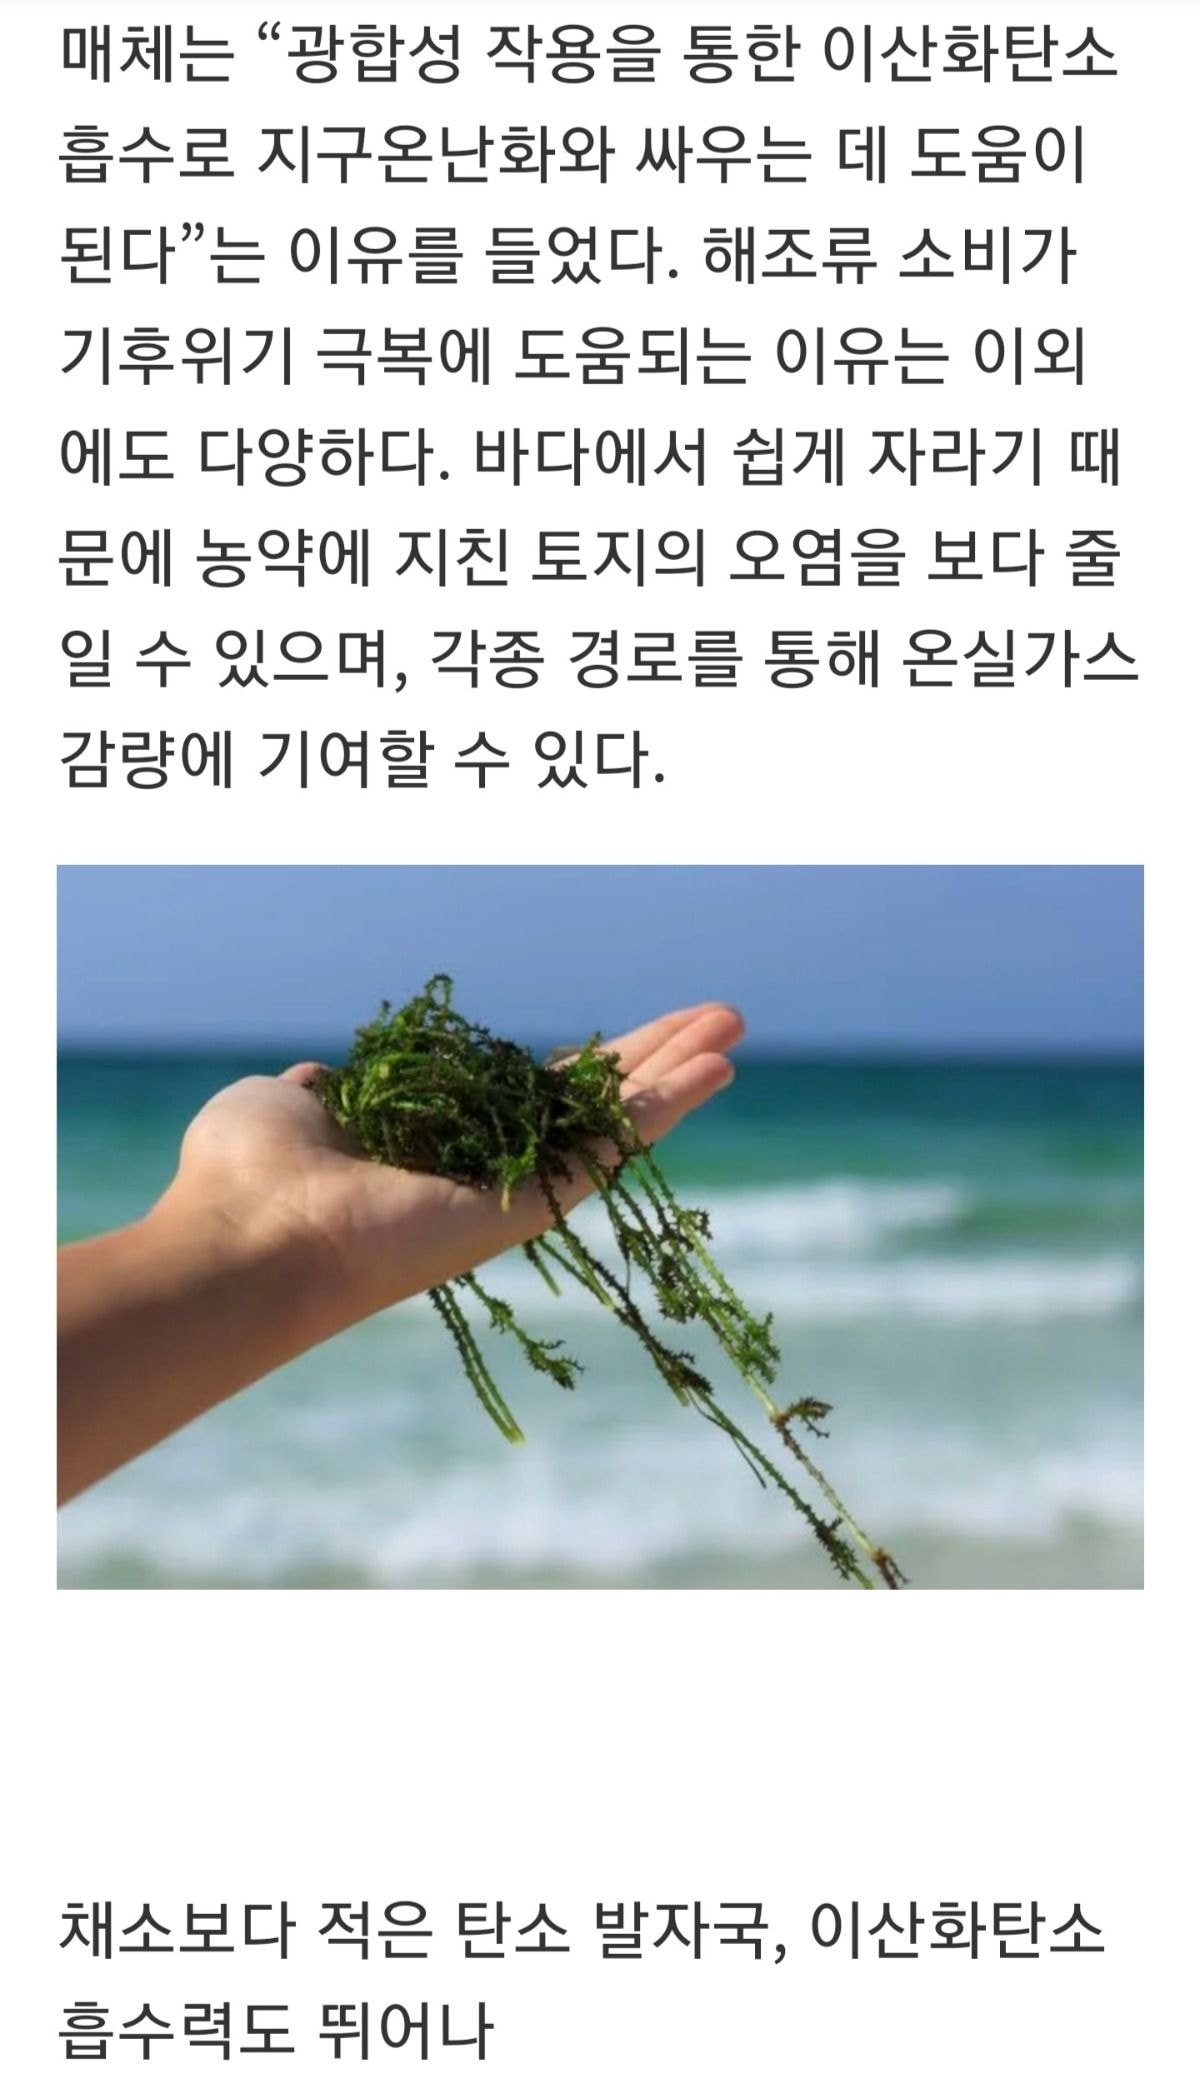 “지구를 위해 해조류를 요리하는 한국인”